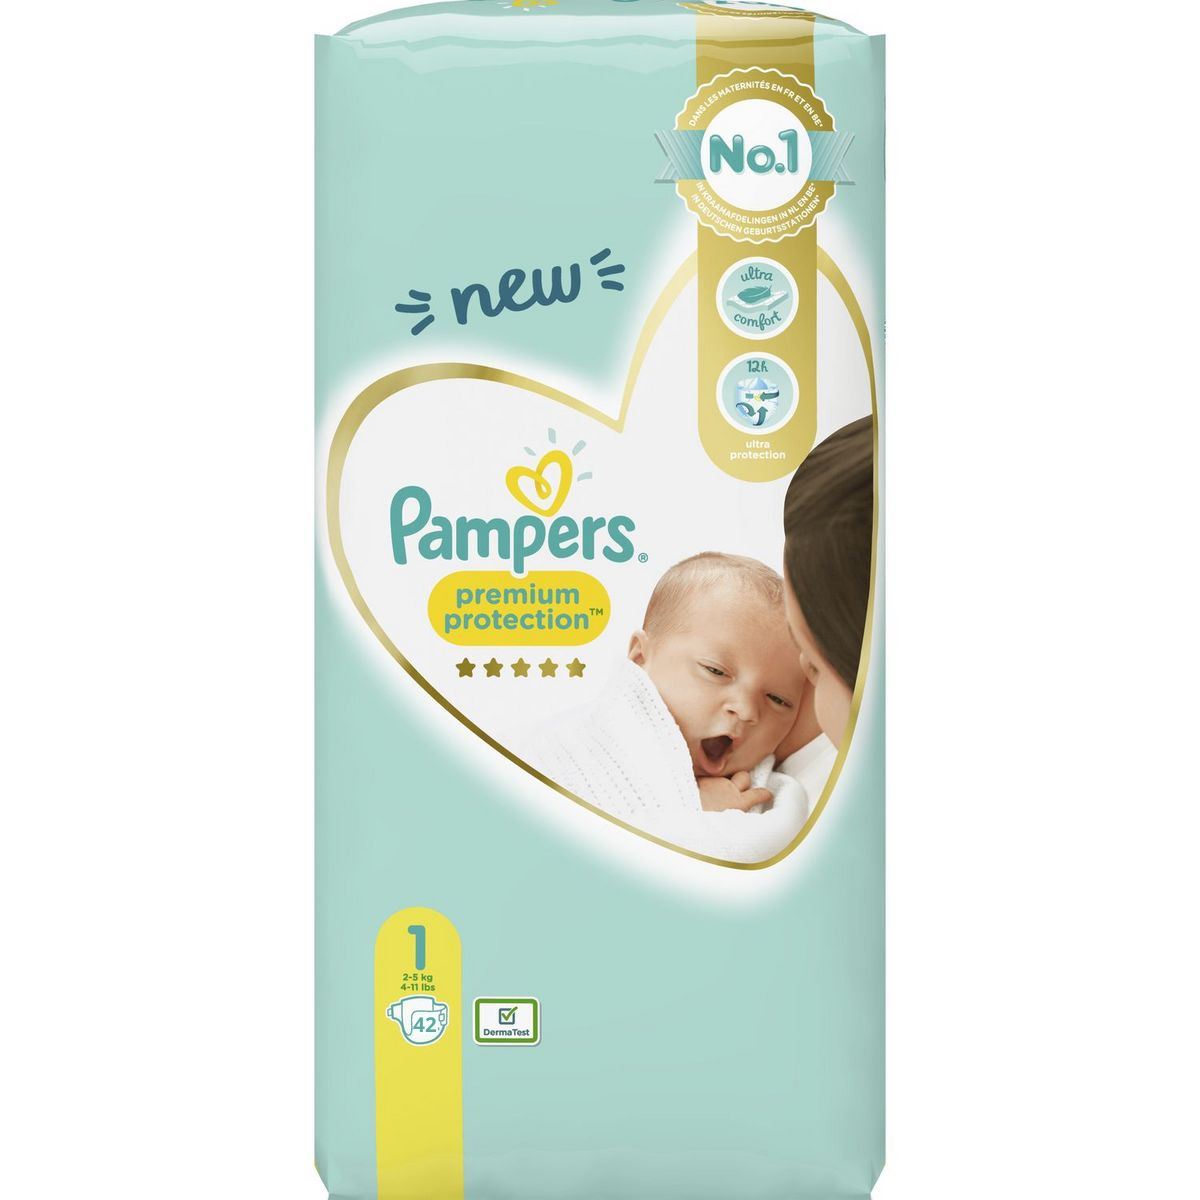 Pampers-Premium-Protection-Diapers-maat-1-42stuks-2-5kg-